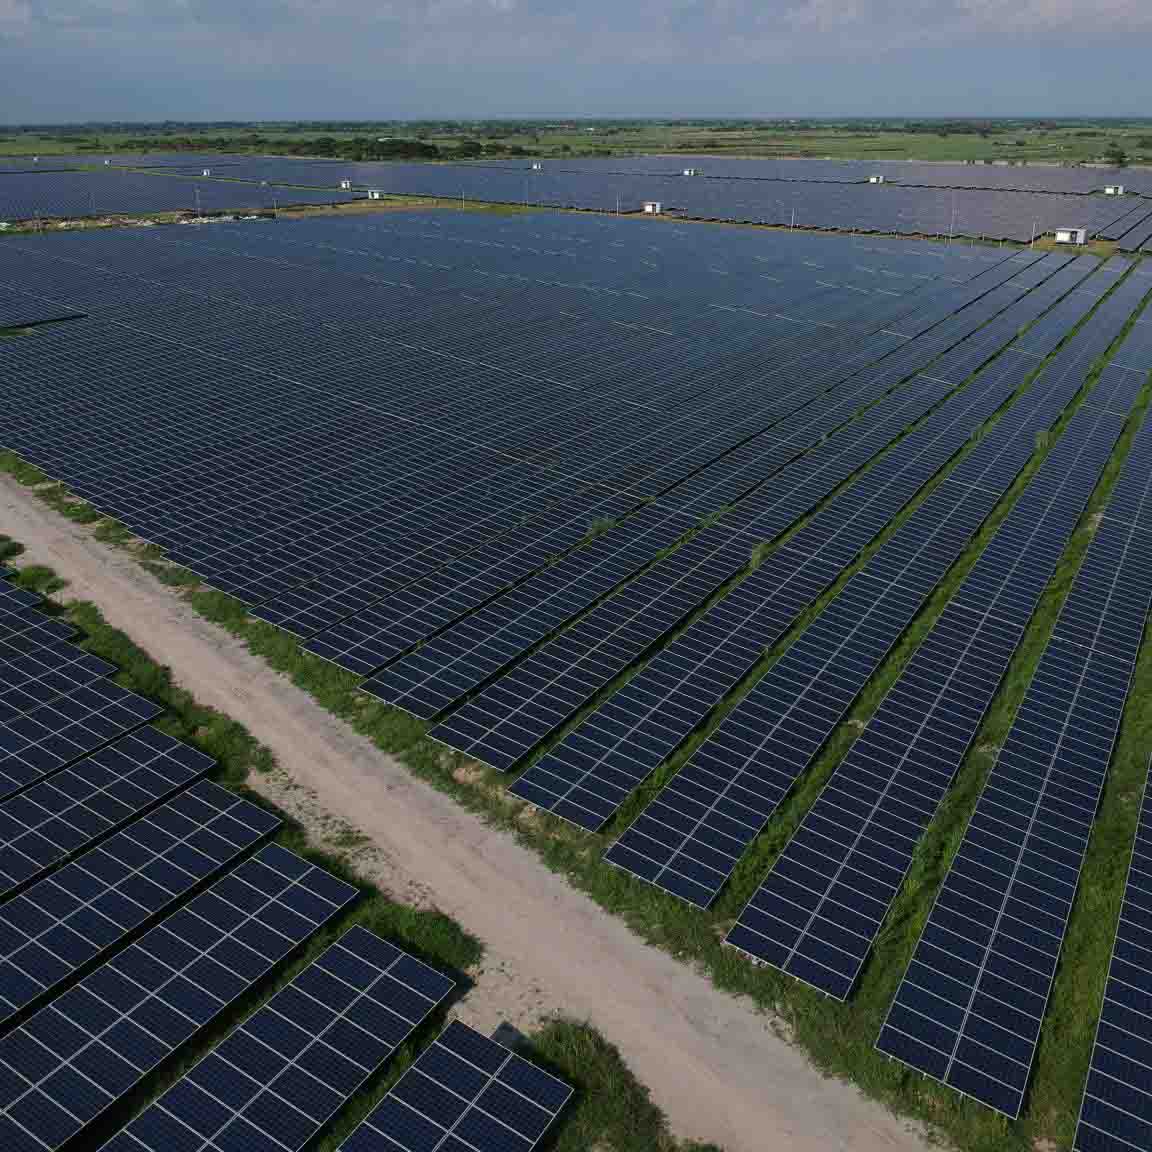 Estación fotovoltaica do proxecto Soalr de 20 MW en Tarlac, Filipinas